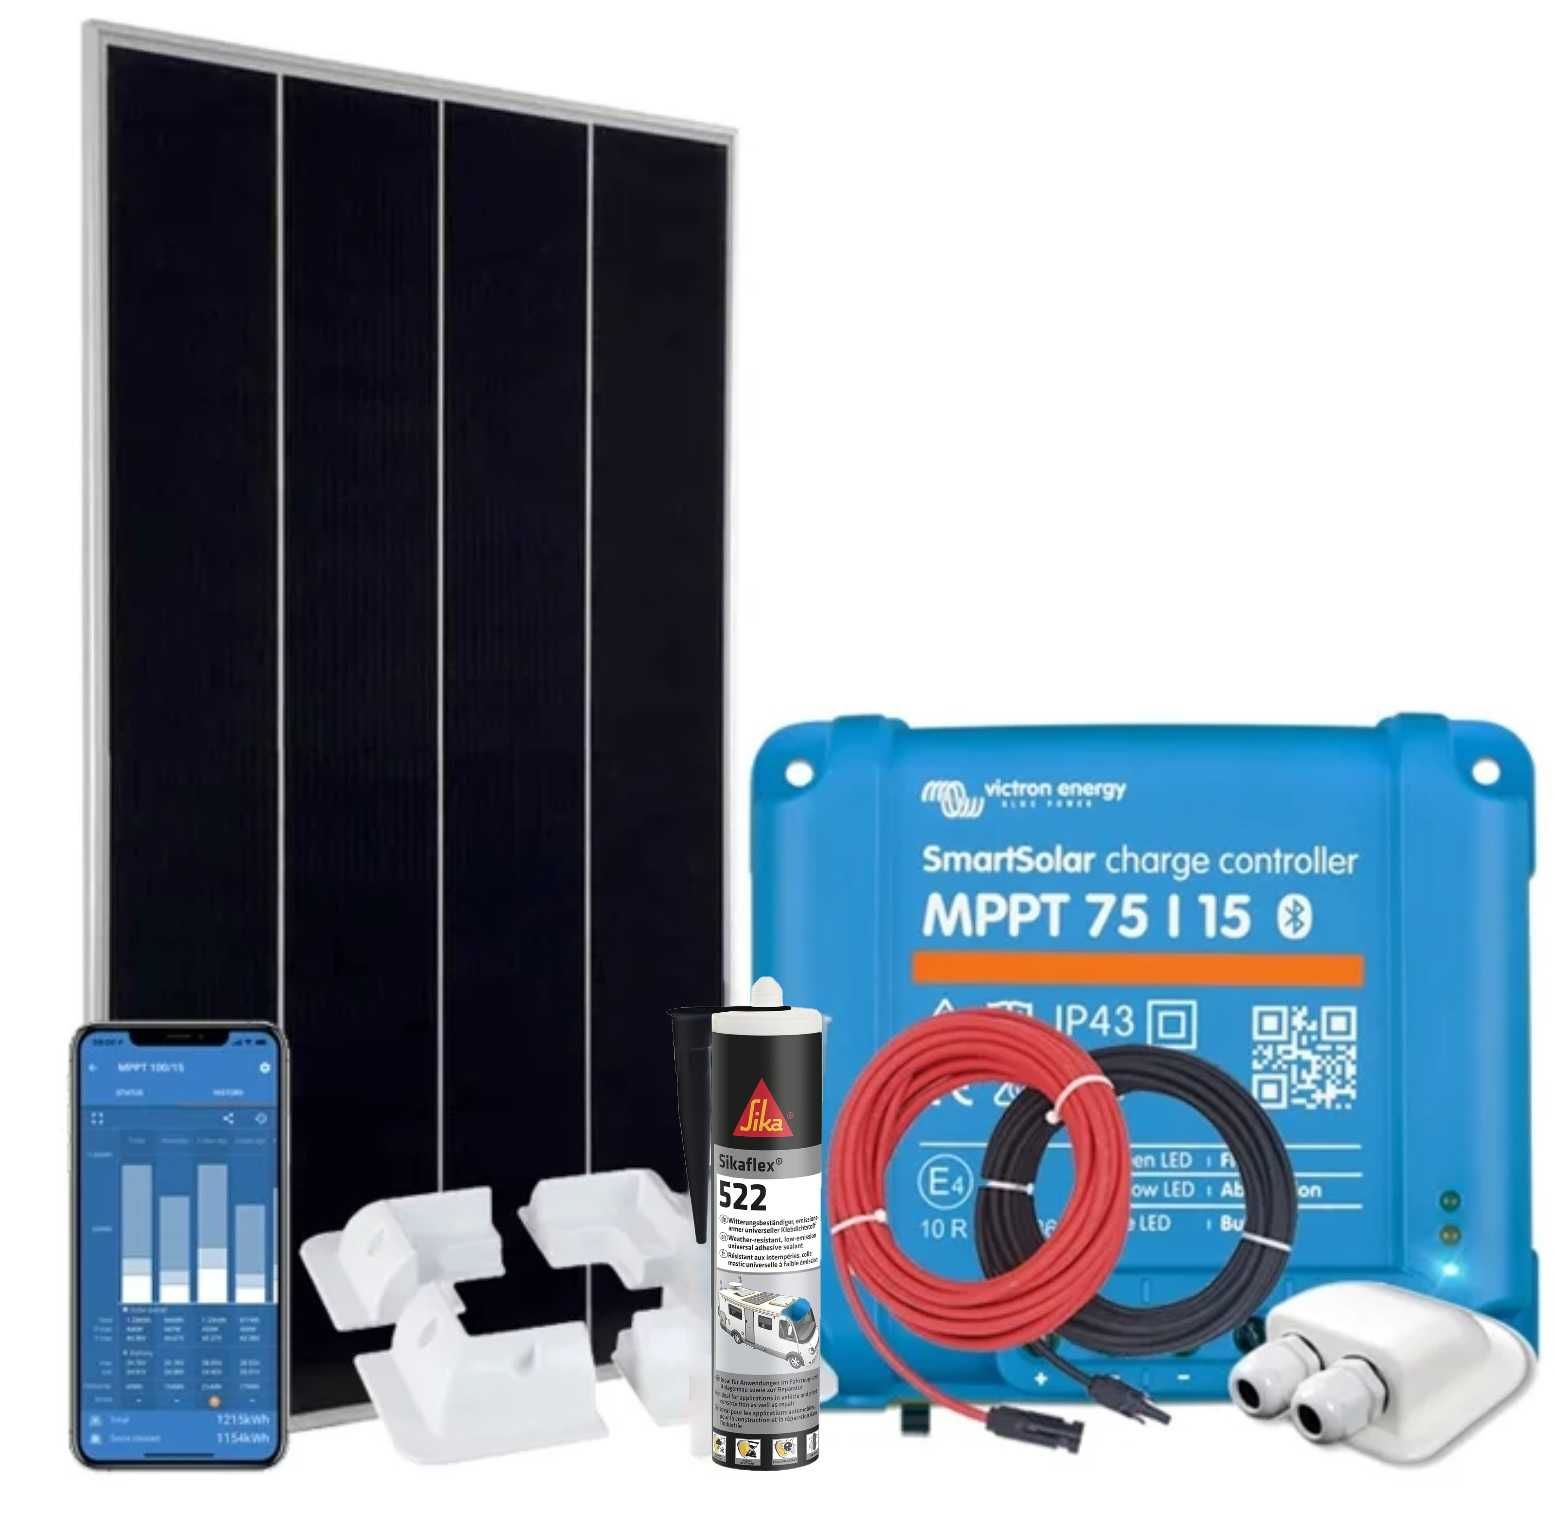 Kit de Energia Solar Victron 175 W com Controlador MPPT